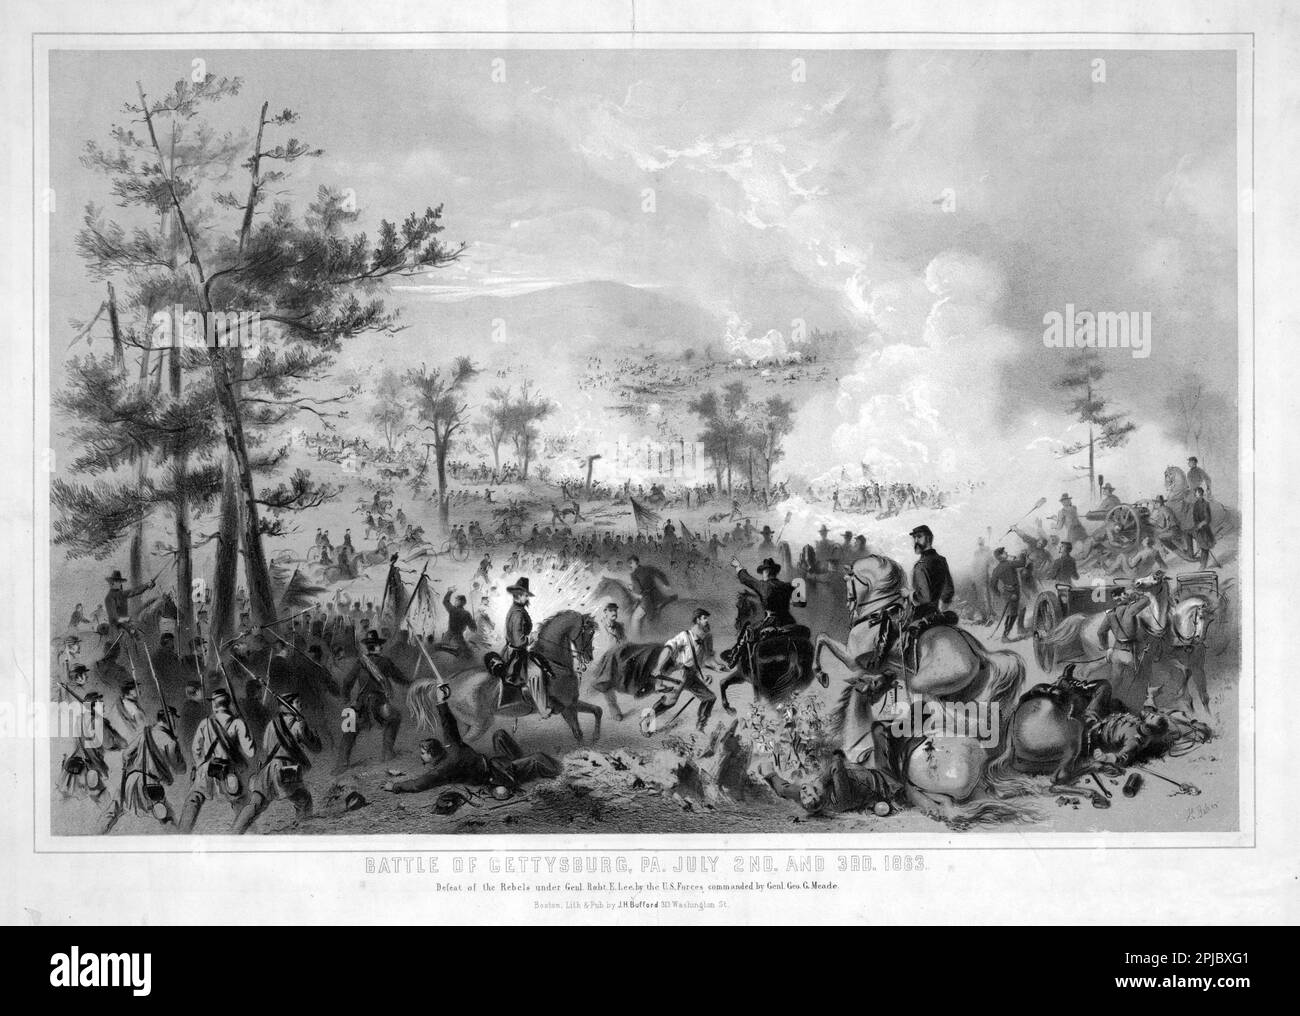 Eine Illustration der Schlacht von Gettysburg während des Amerikanischen Bürgerkriegs. Die Schlacht von Gettysberg war das Ende der Nordbewegung der konföderierten Truppen, und ihre Niederlage in Gettysburg wird oft als Wendepunkt des Krieges angesehen. In der Schlacht trafen sich 200.000 Männer im Kampf, mit einer kombinierten Todeszahl von 8000. Stockfoto